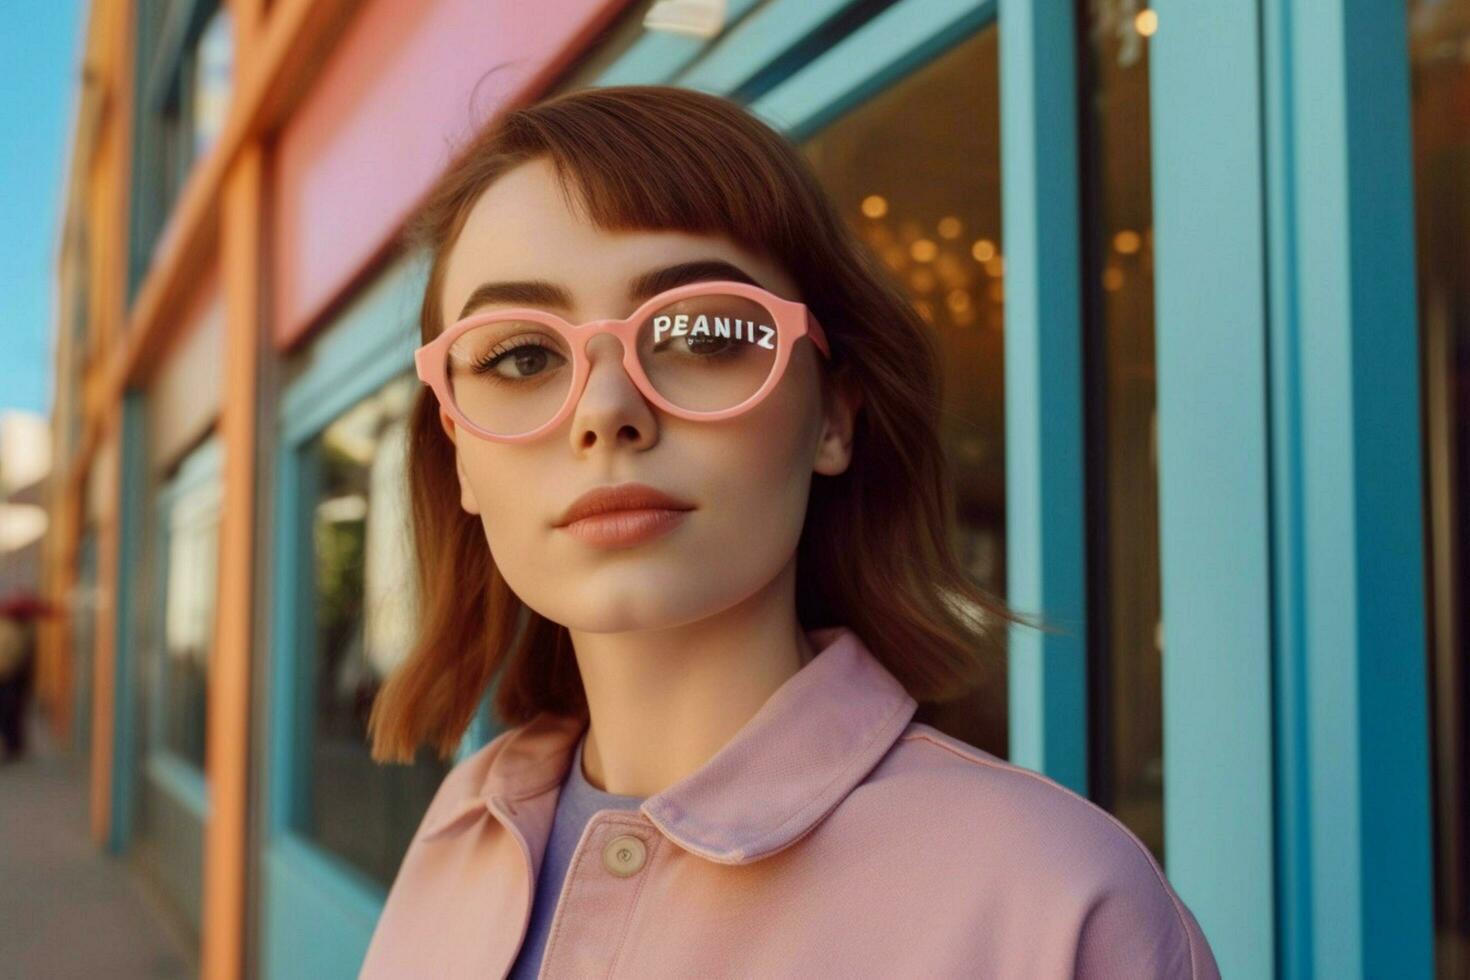 un mujer vistiendo lentes con el palabra panera en t foto